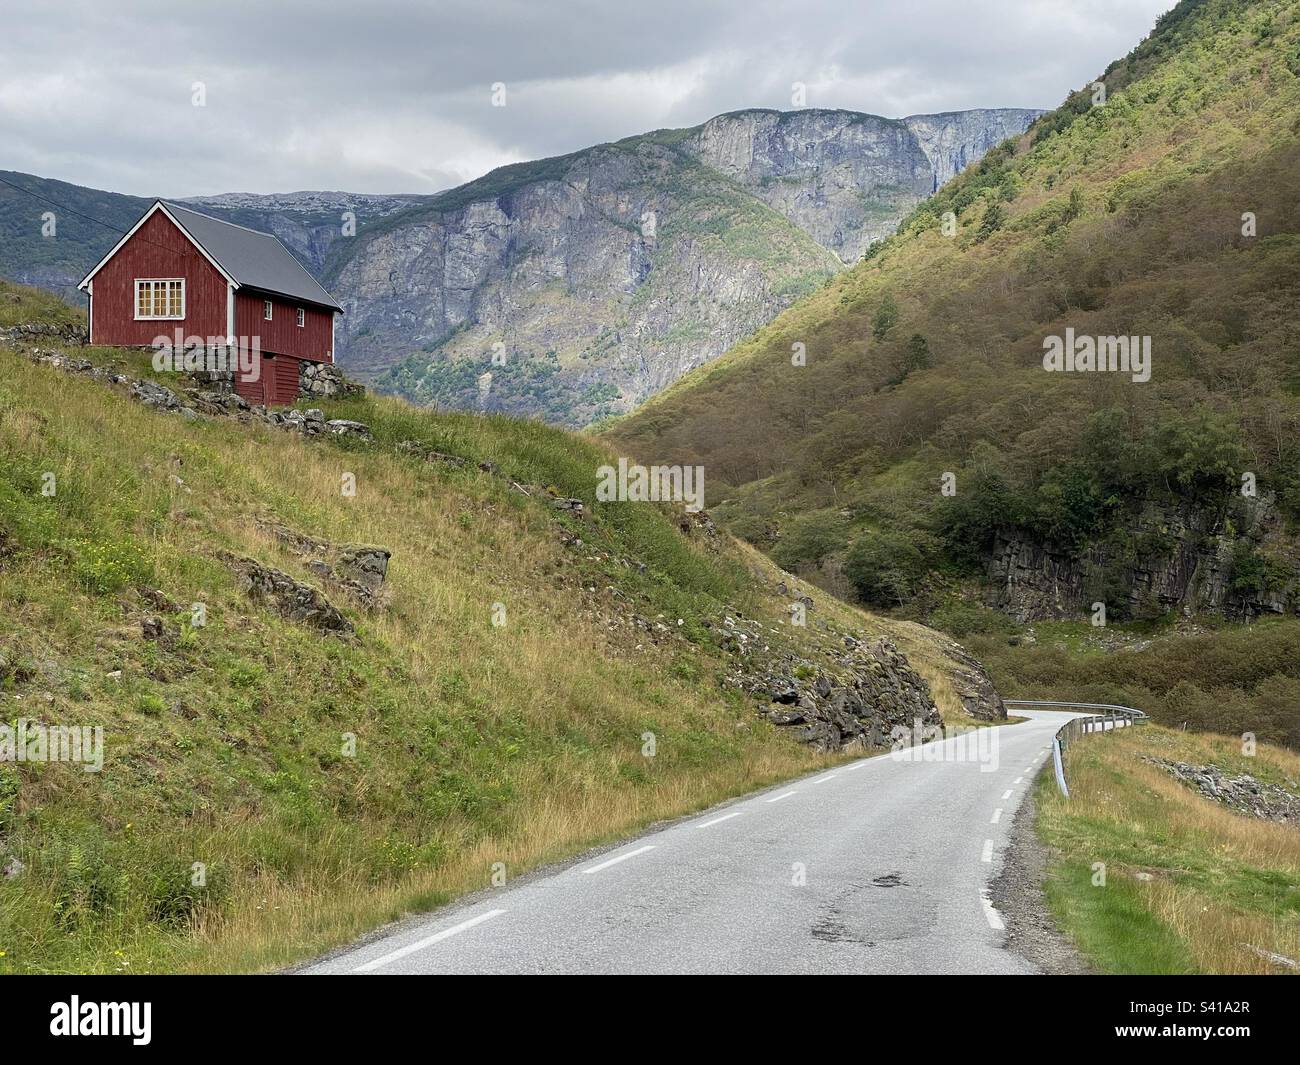 Paysage norvégien avec maison en bois typiquement norvégienne Banque D'Images